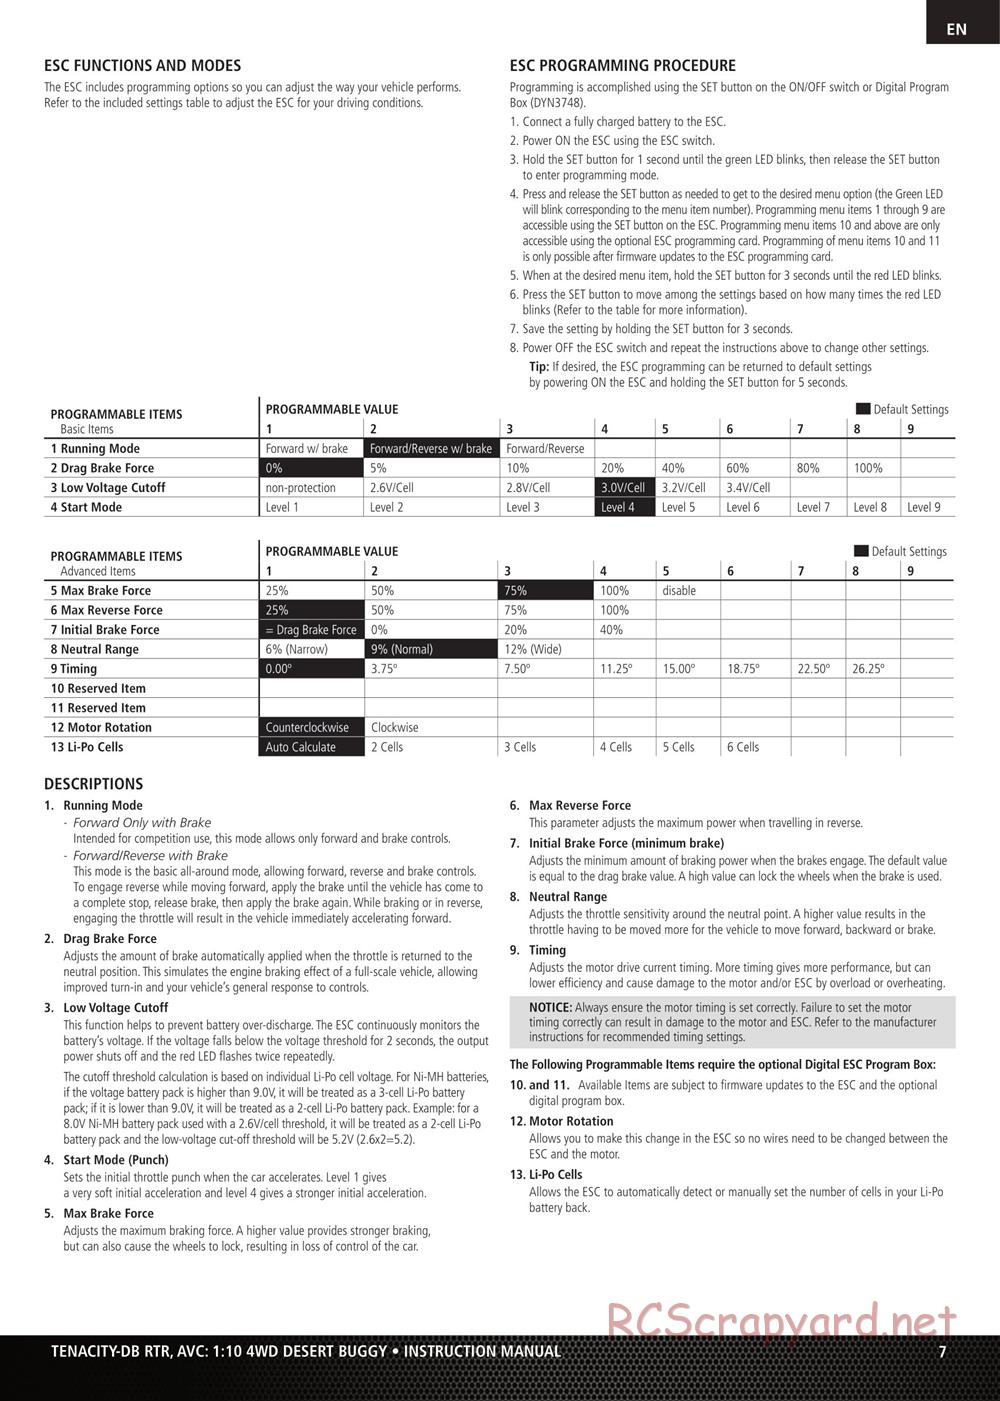 Team Losi - Tenacity-DB - Manual - Page 7